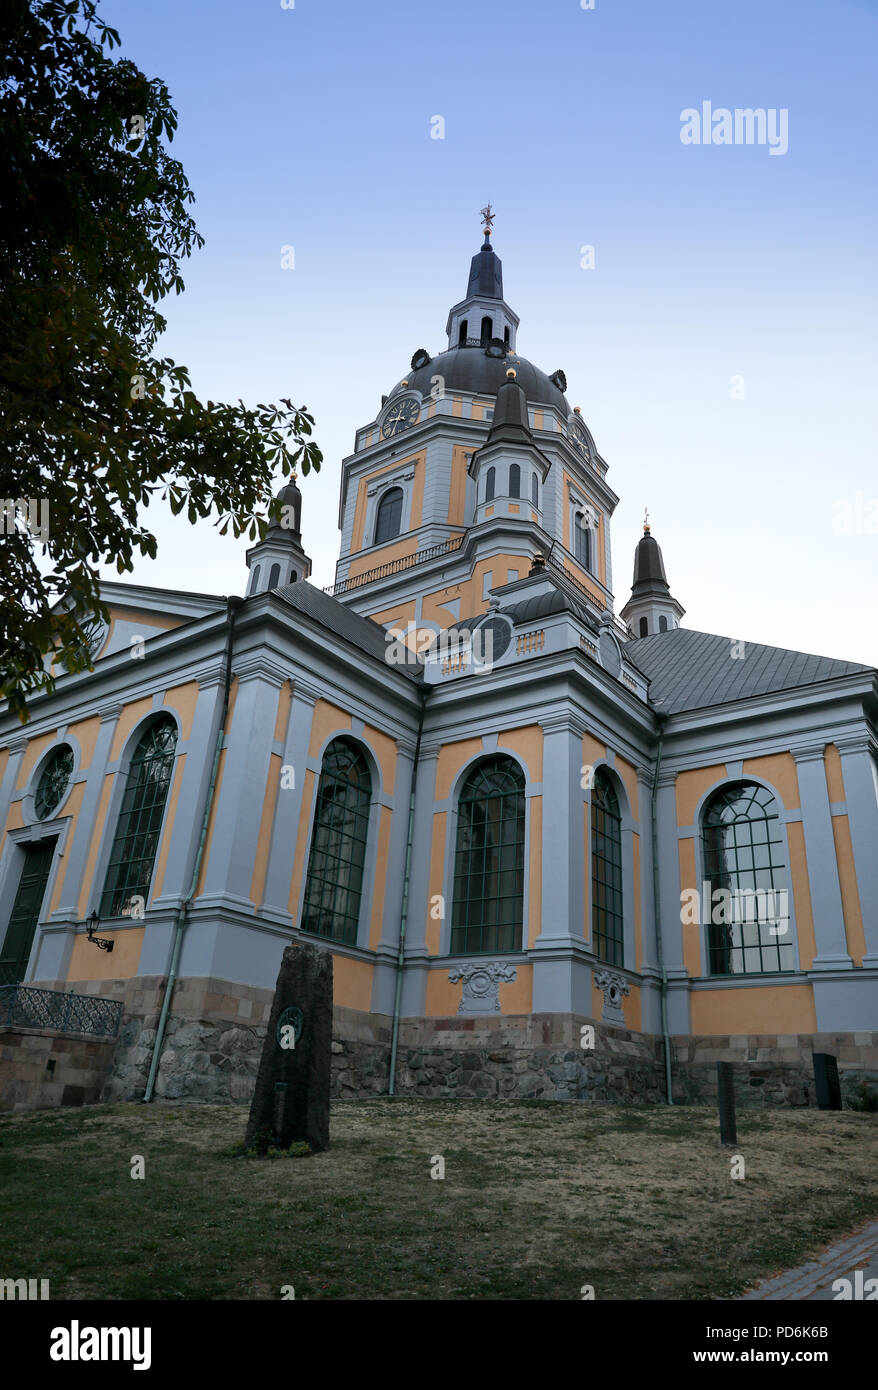 Katarina kyrka ist eine der größten Kirchen in Stockholm, Schweden. Das ursprüngliche Gebäude wurde 1656-1695. Stockfoto